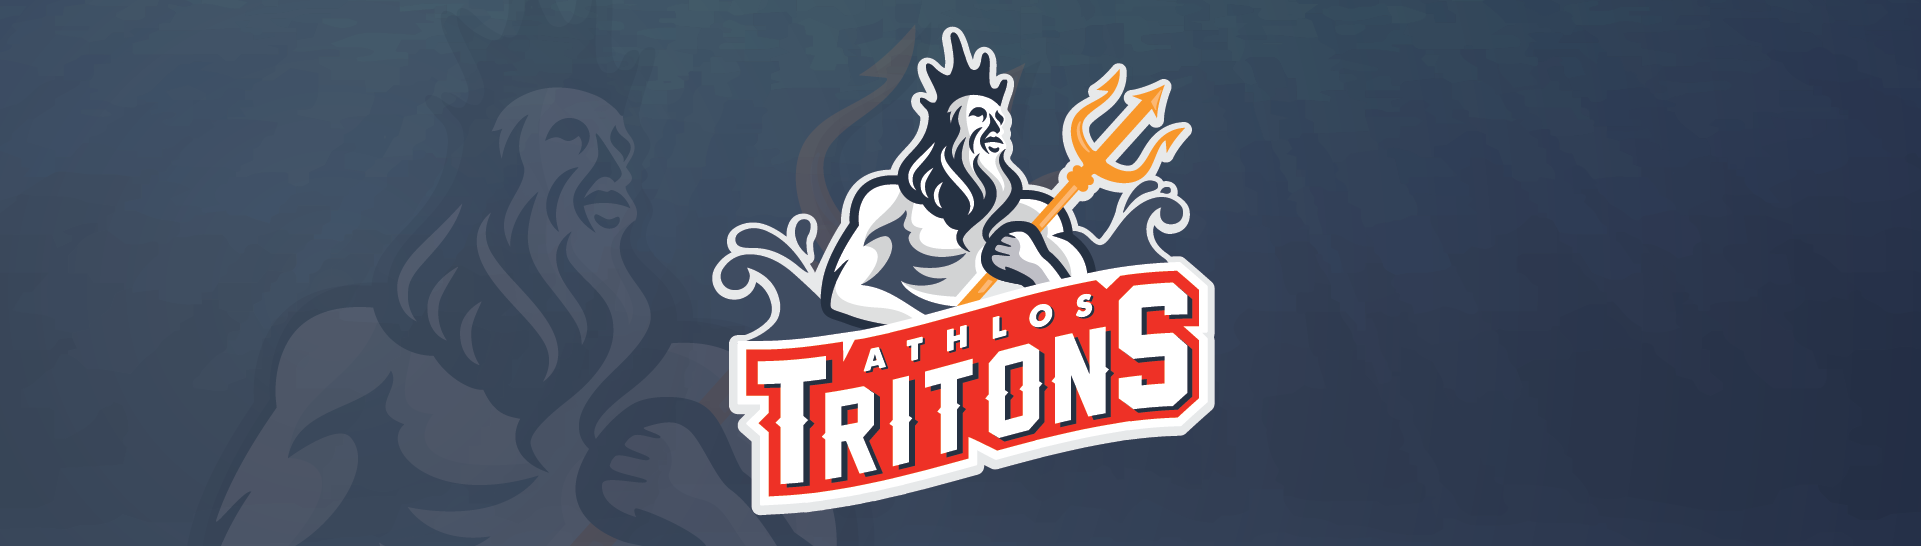 Athlos Tritons